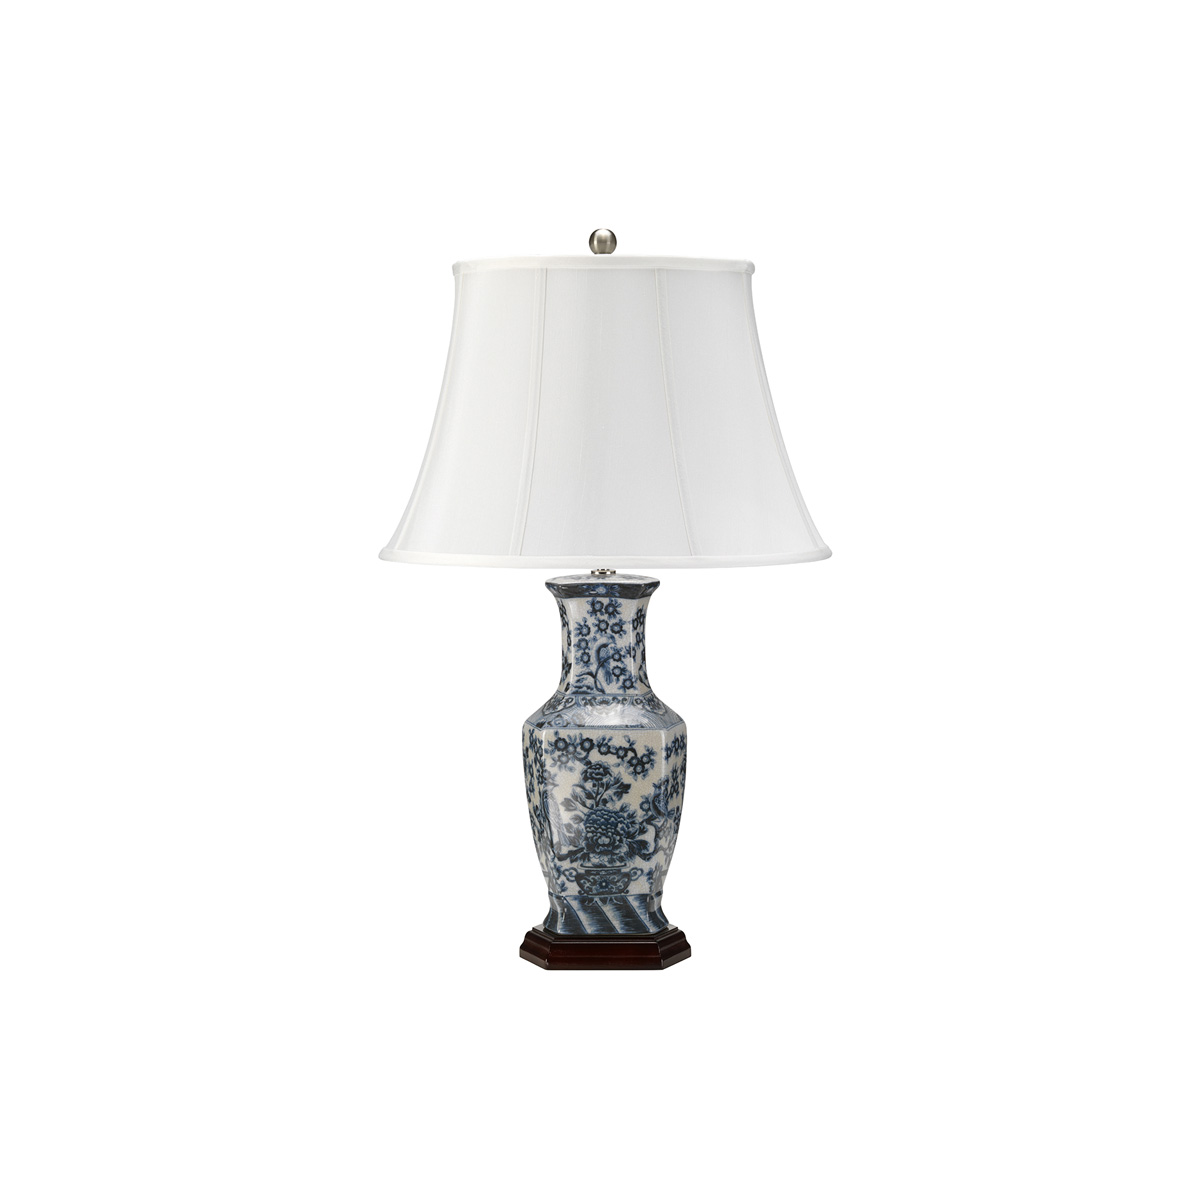 Настольная лампа BLUE-HEX-TL, Настольные лампы Классический/Традиционный | Керамика | Прихожая, спальня, гостиная, столовая.